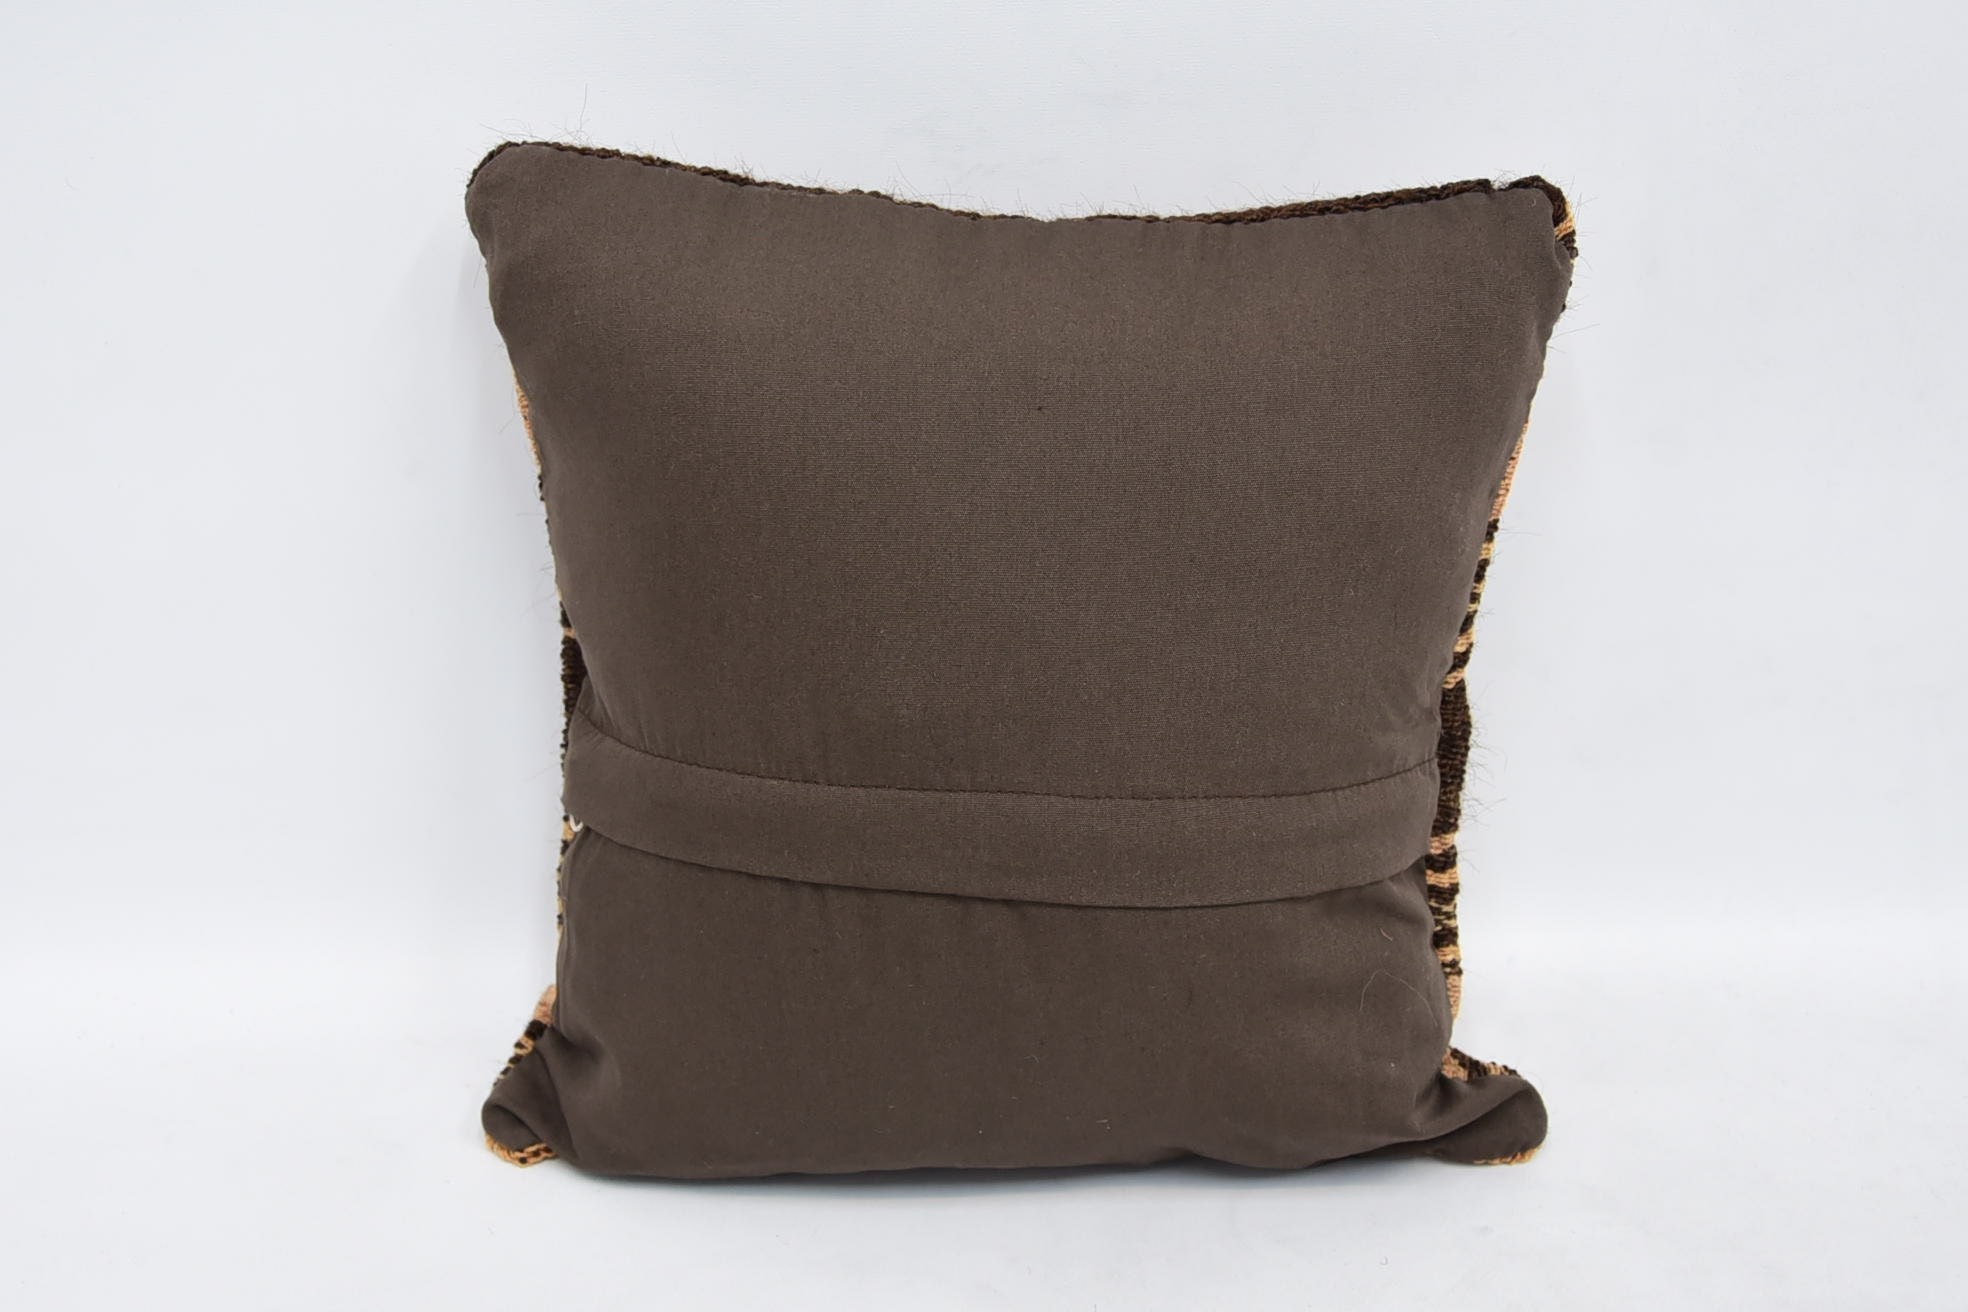 Neutral Throw Cushion Cover, Kilim Pillow, 12"x12" Brown Cushion Cover, Throw Kilim Pillow, Handmade Kilim Cushion